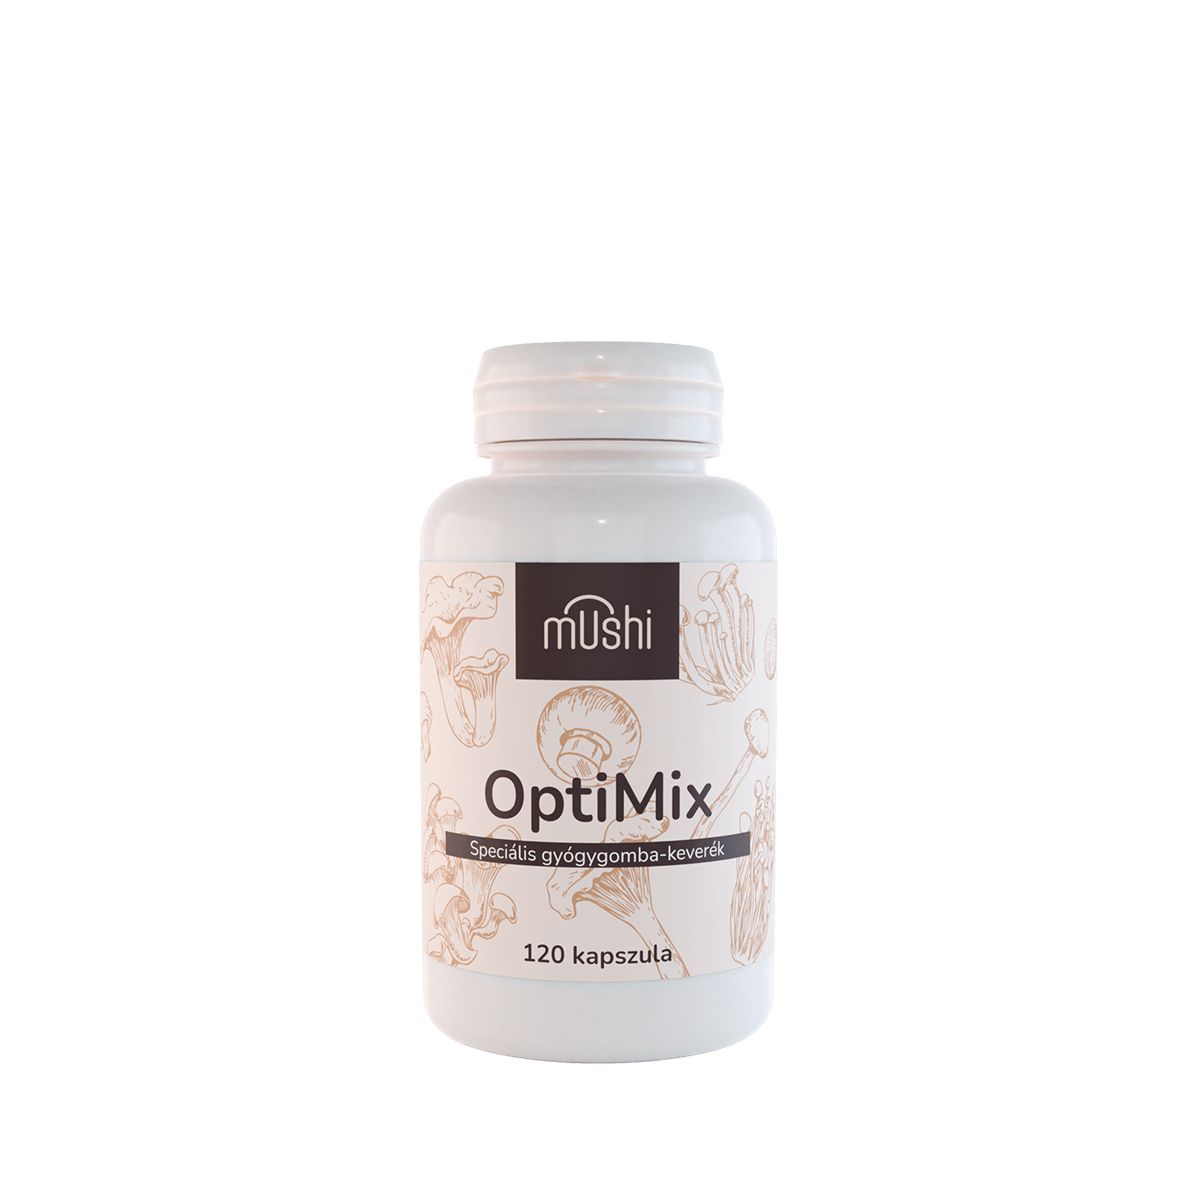 Speciális gyógygomba-keverék, Mushi OptiMix, 120 kapszula